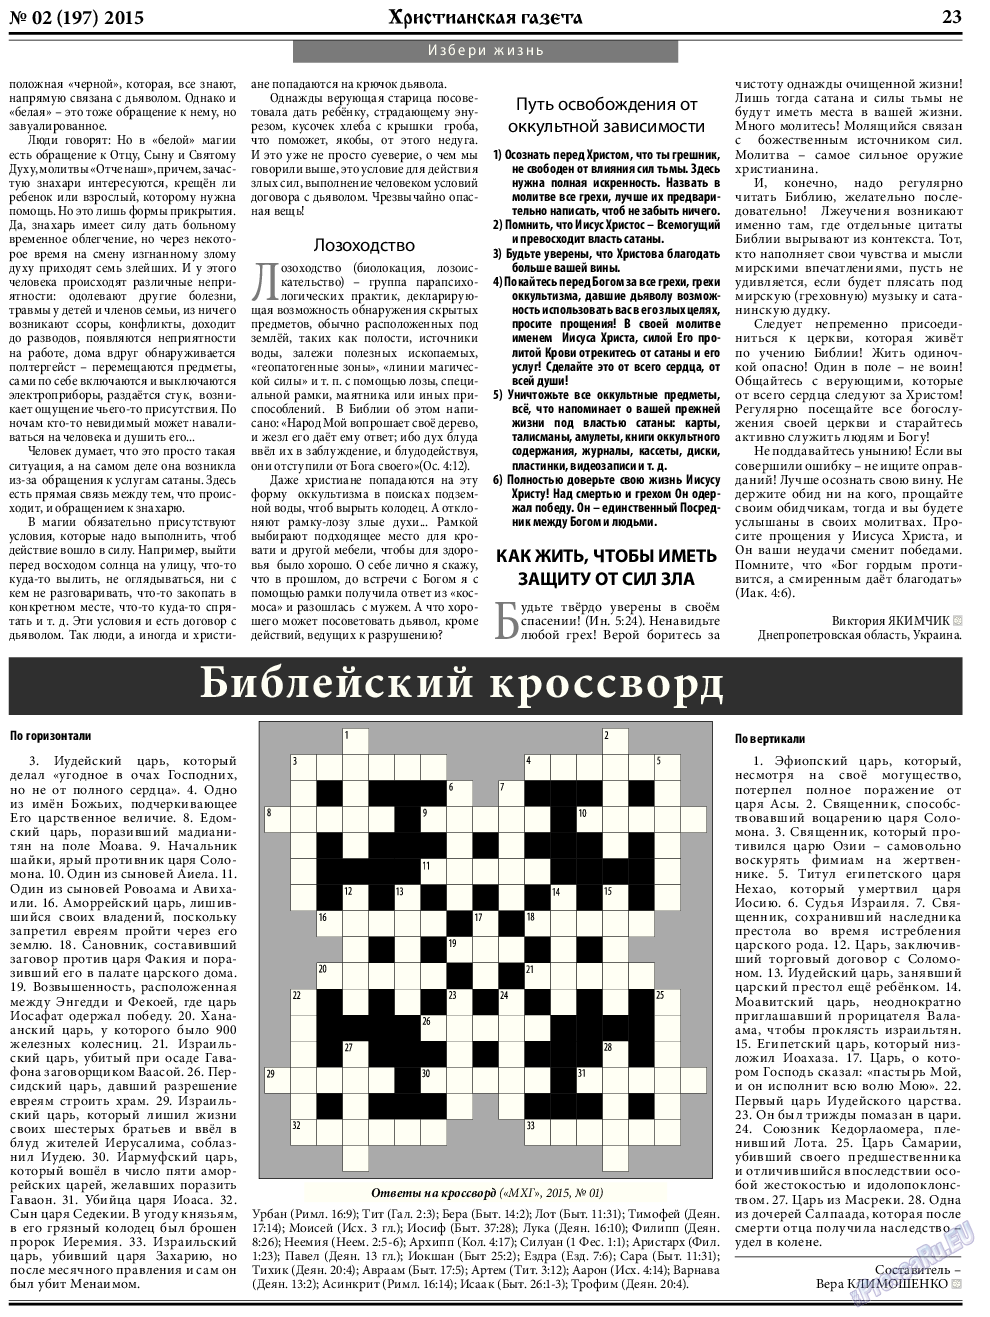 Христианская газета, газета. 2015 №2 стр.31